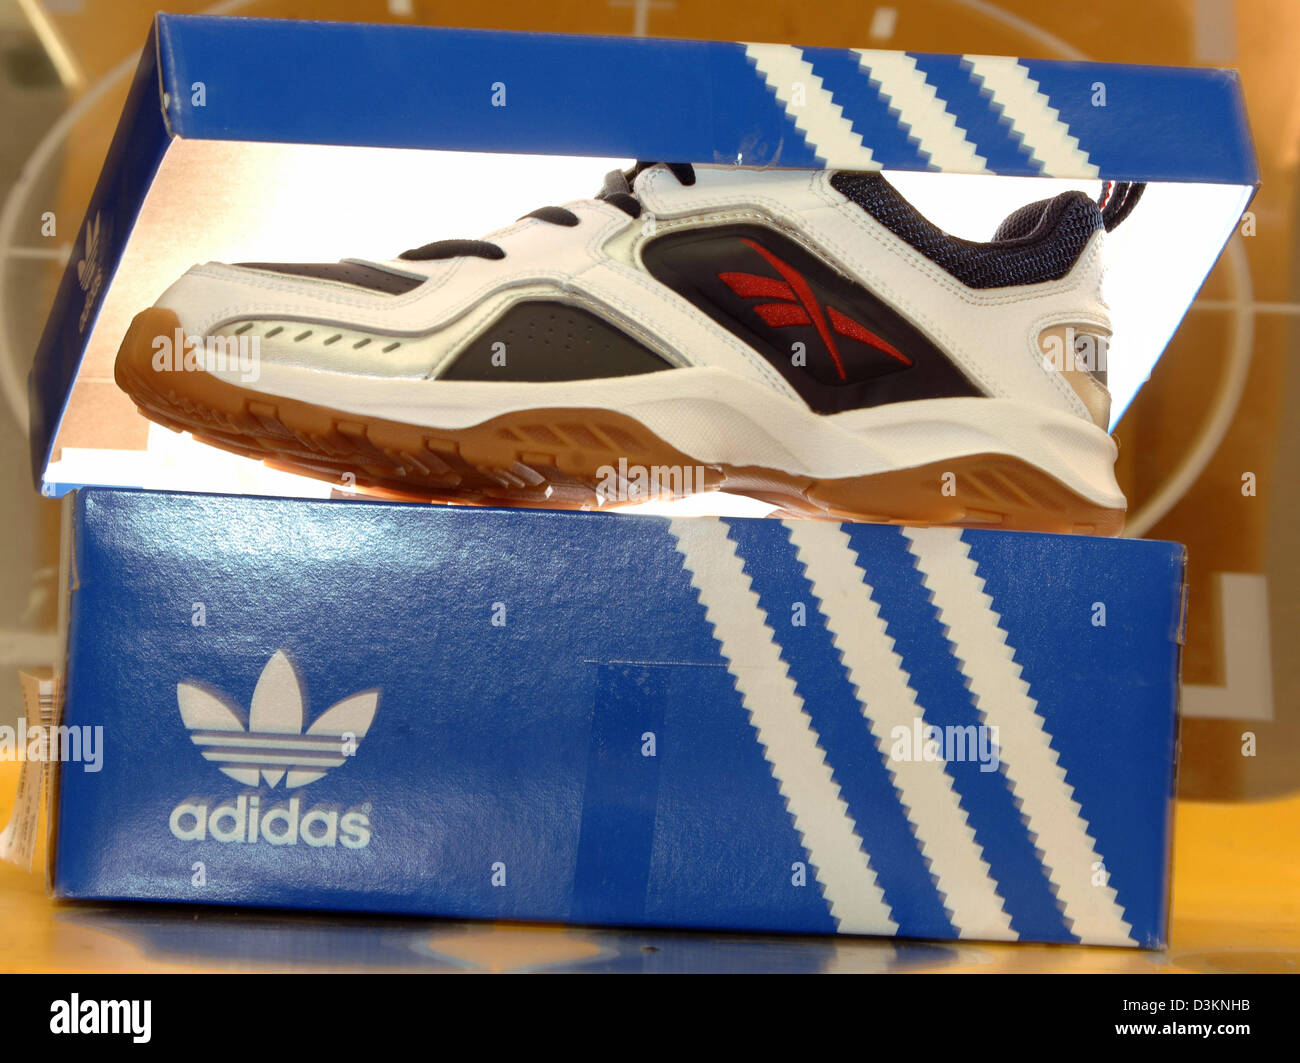 Afp) - l'image montre une sneaker Adidas Reebok dans une boîte à chaussures  dans un magasin d'articles de sport à Munich, Allemagne, le mercredi 03  août 2005. En vue de combler le